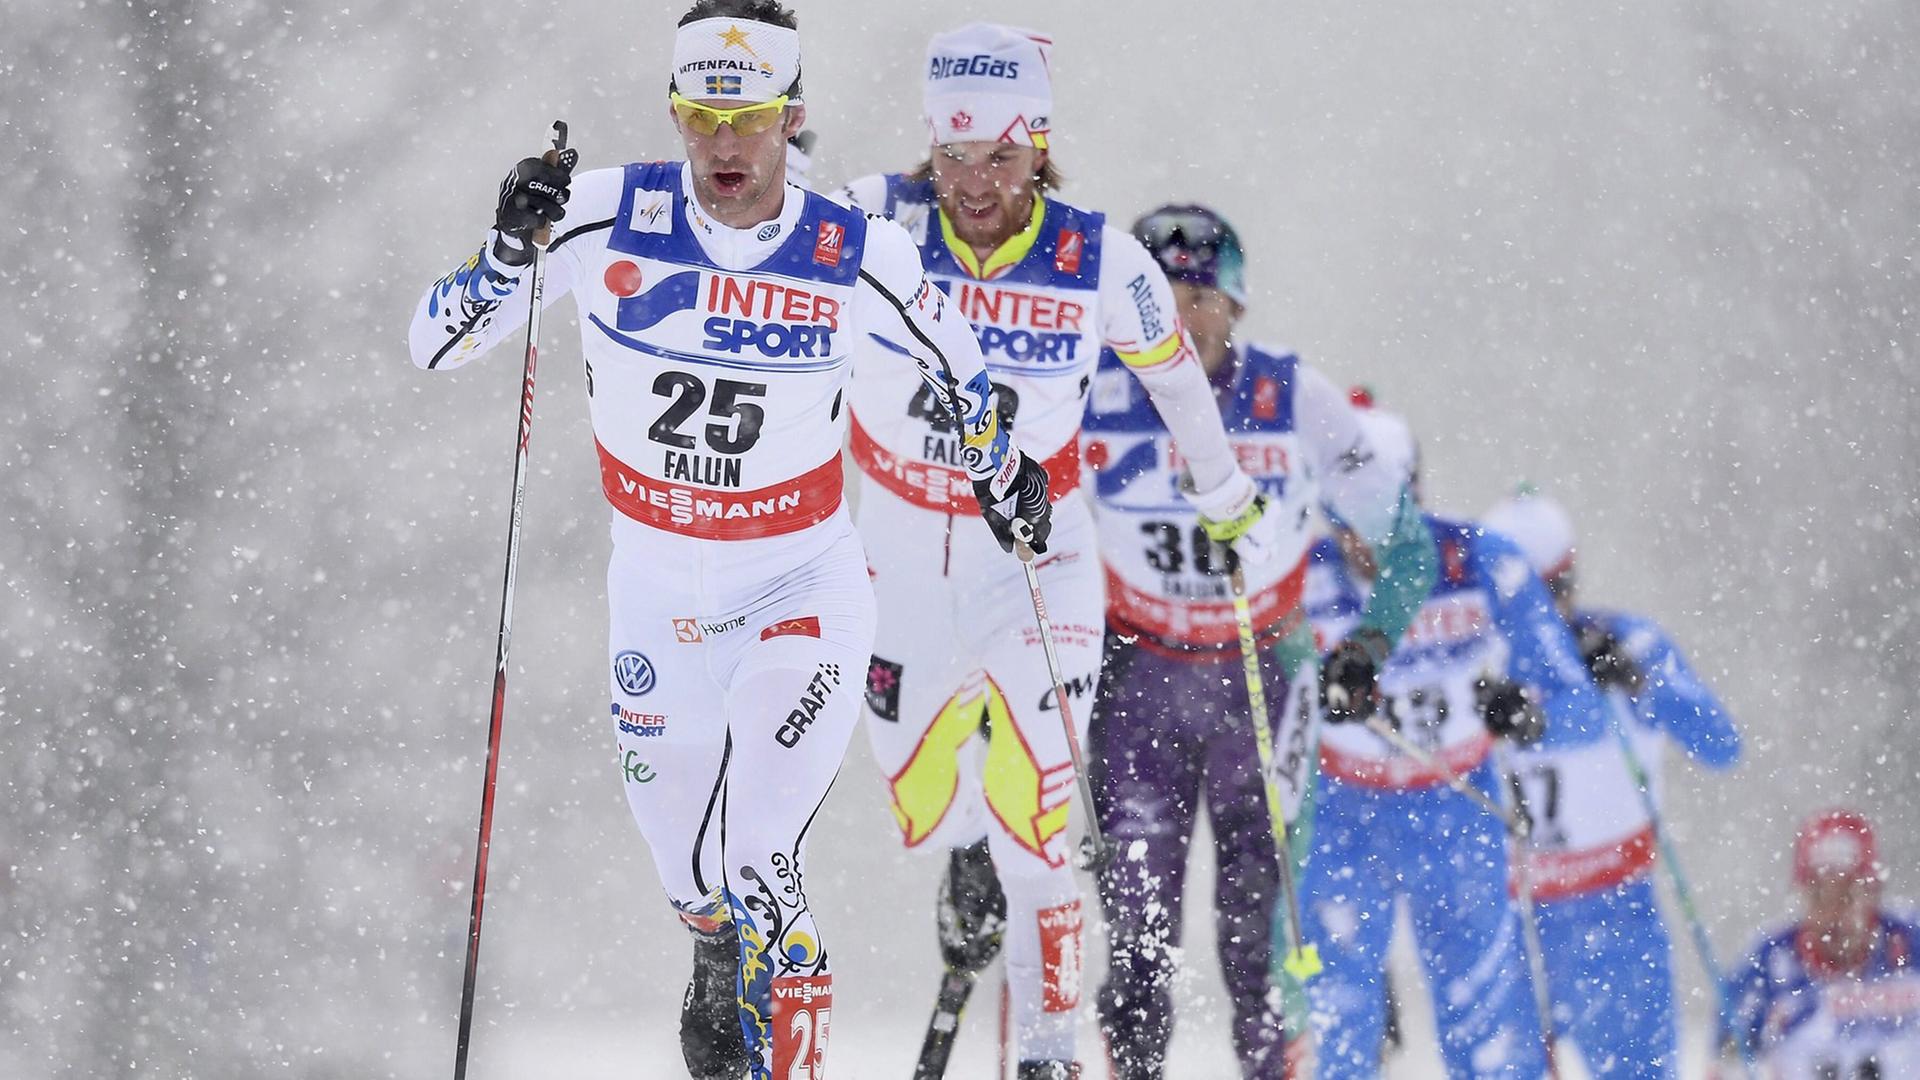 50 Kilometer Lang-Lauf der Männer bei der Ski-WM in Falun 